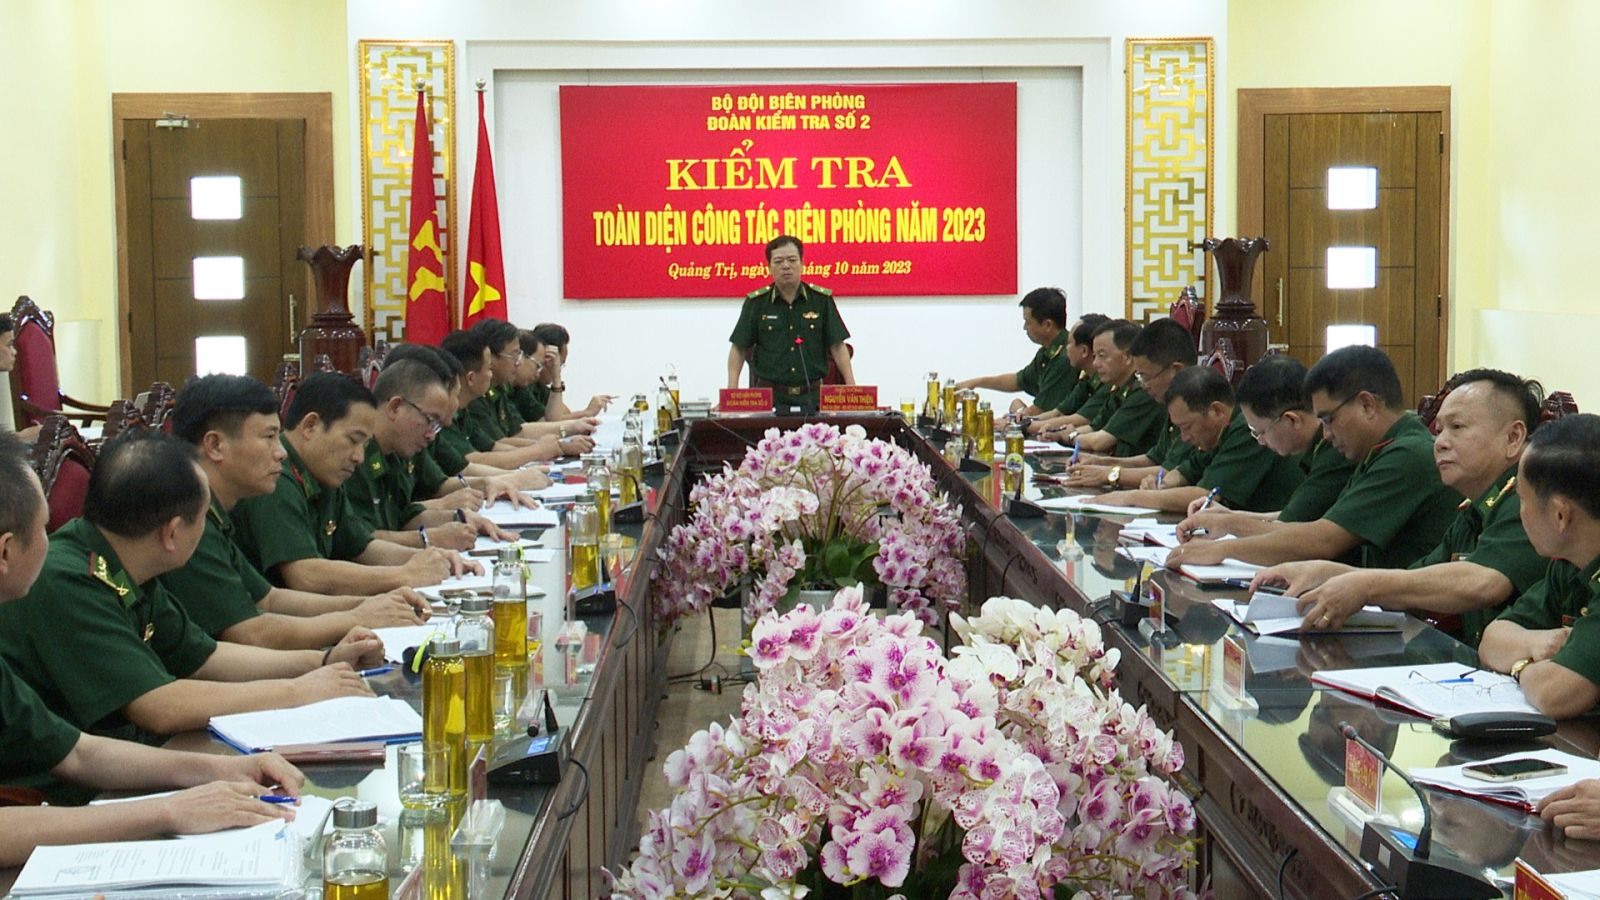 Thiếu tướng Nguyễn Văn Thiện, Phó Tư lệnh BĐBP phát biểu tại buổi kiểm tra